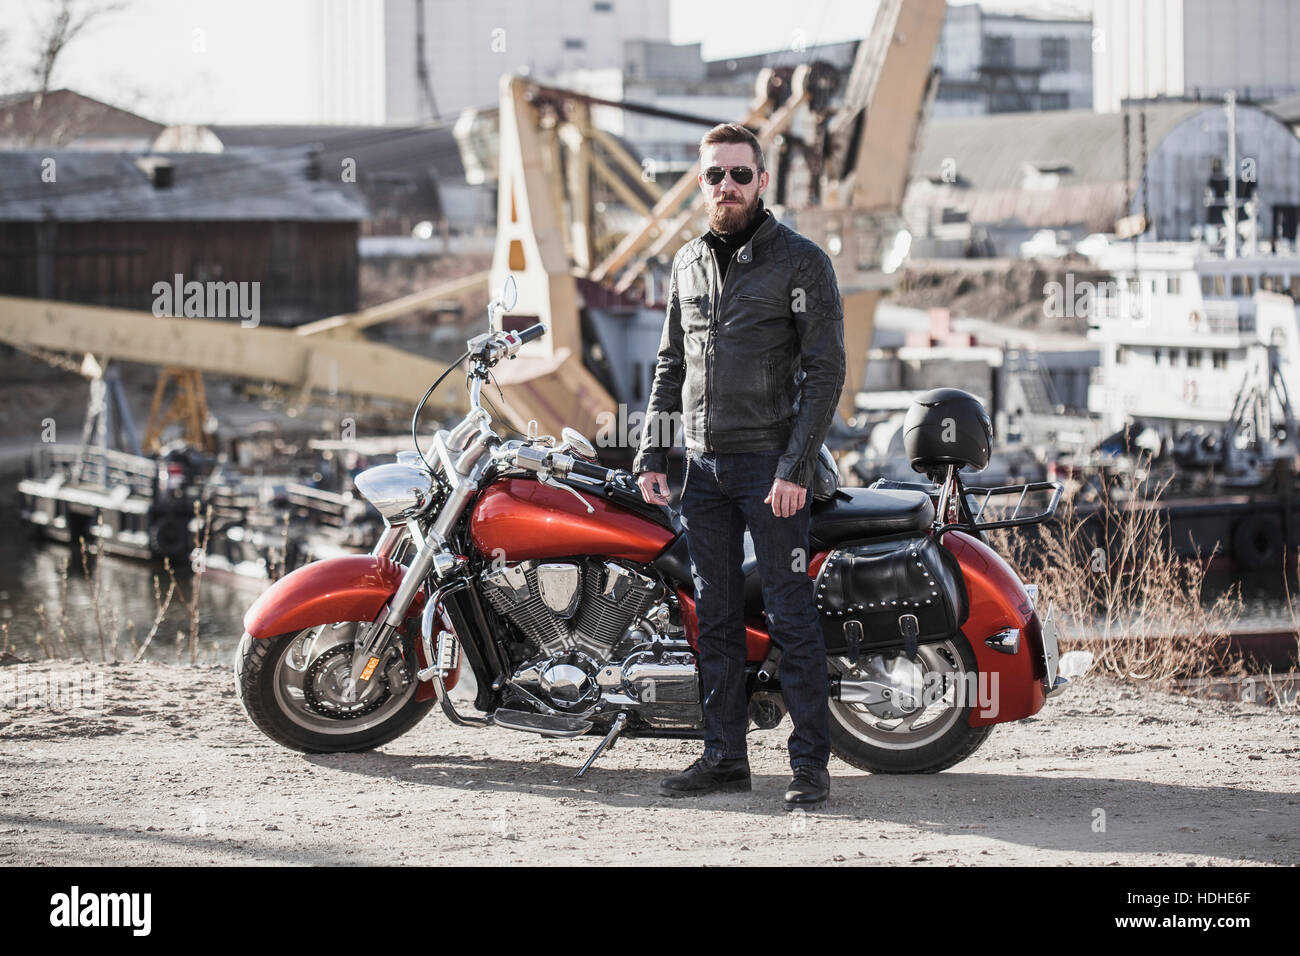 A piena lunghezza Ritratto di biker in piedi da moto contro l'impostazione industriale Foto Stock